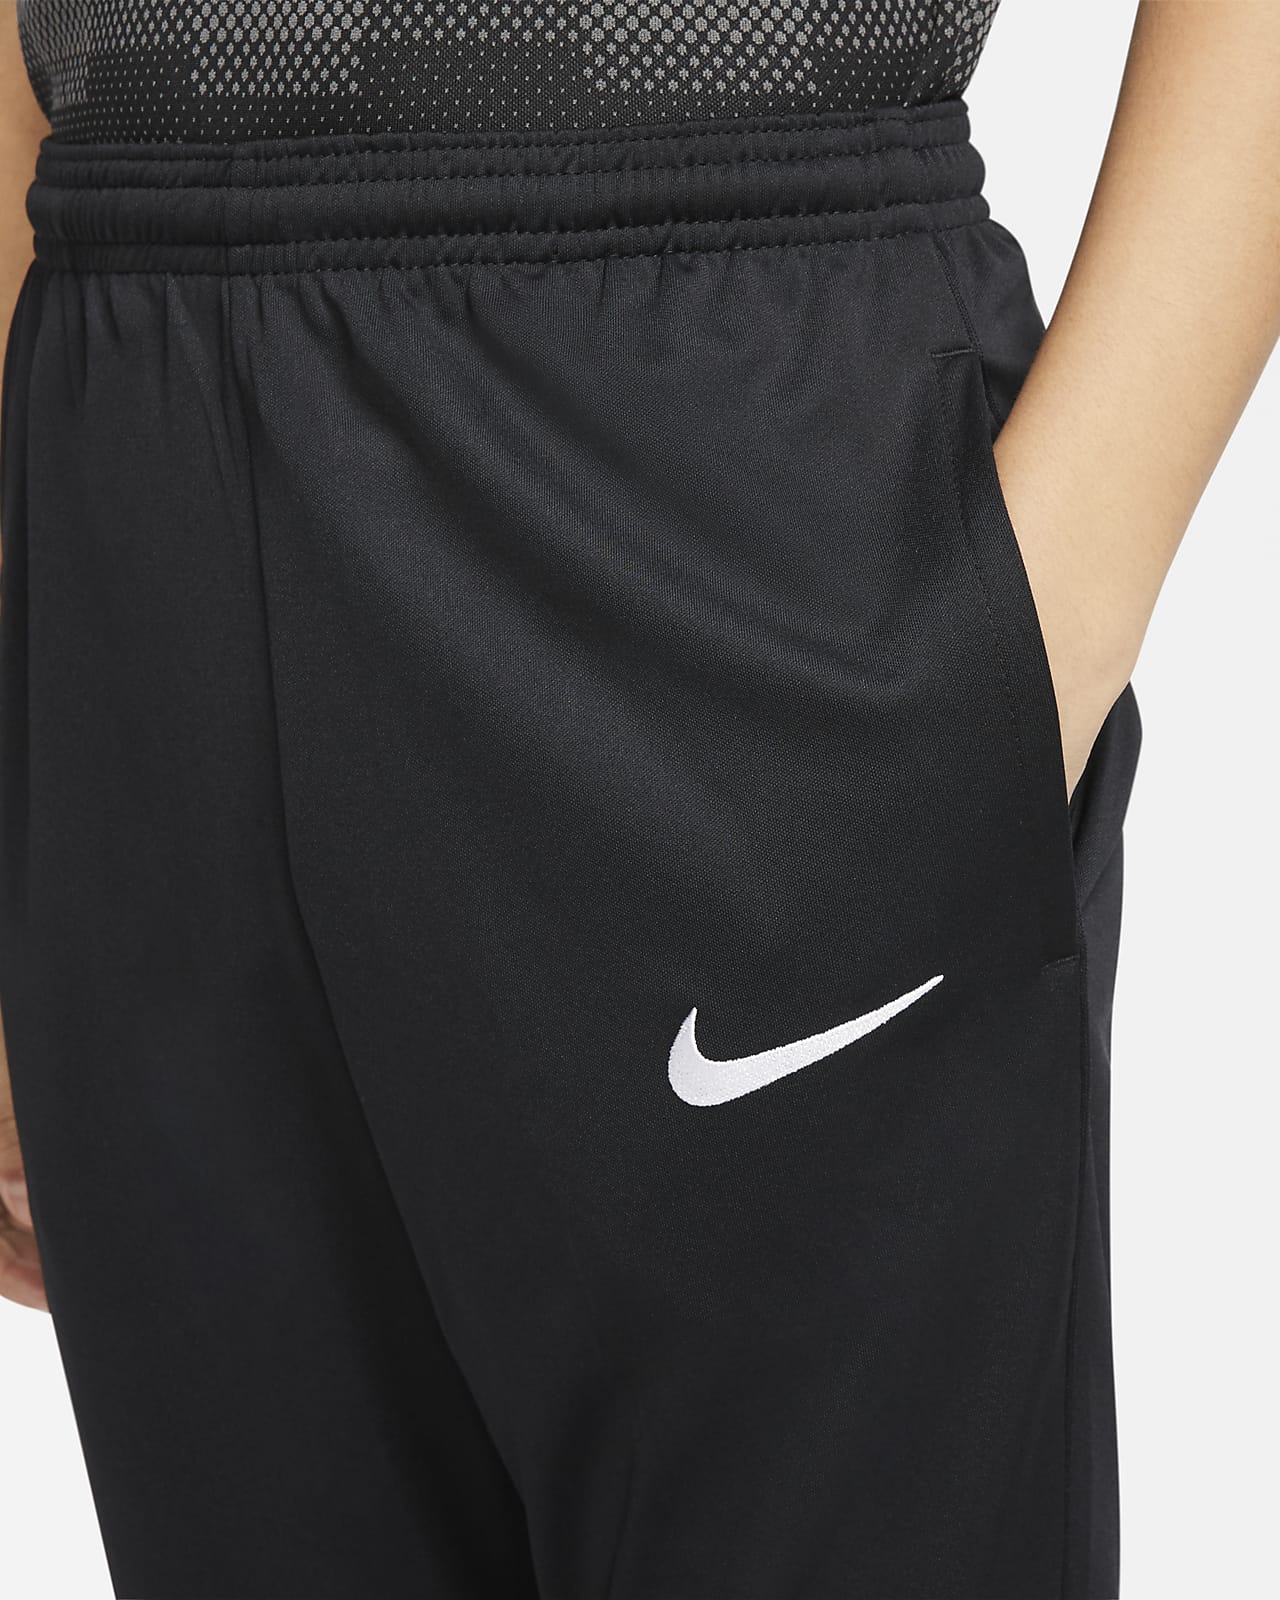 Nike公式 ナイキ Dri Fit ジュニア ニット サッカーパンツ オンラインストア 通販サイト